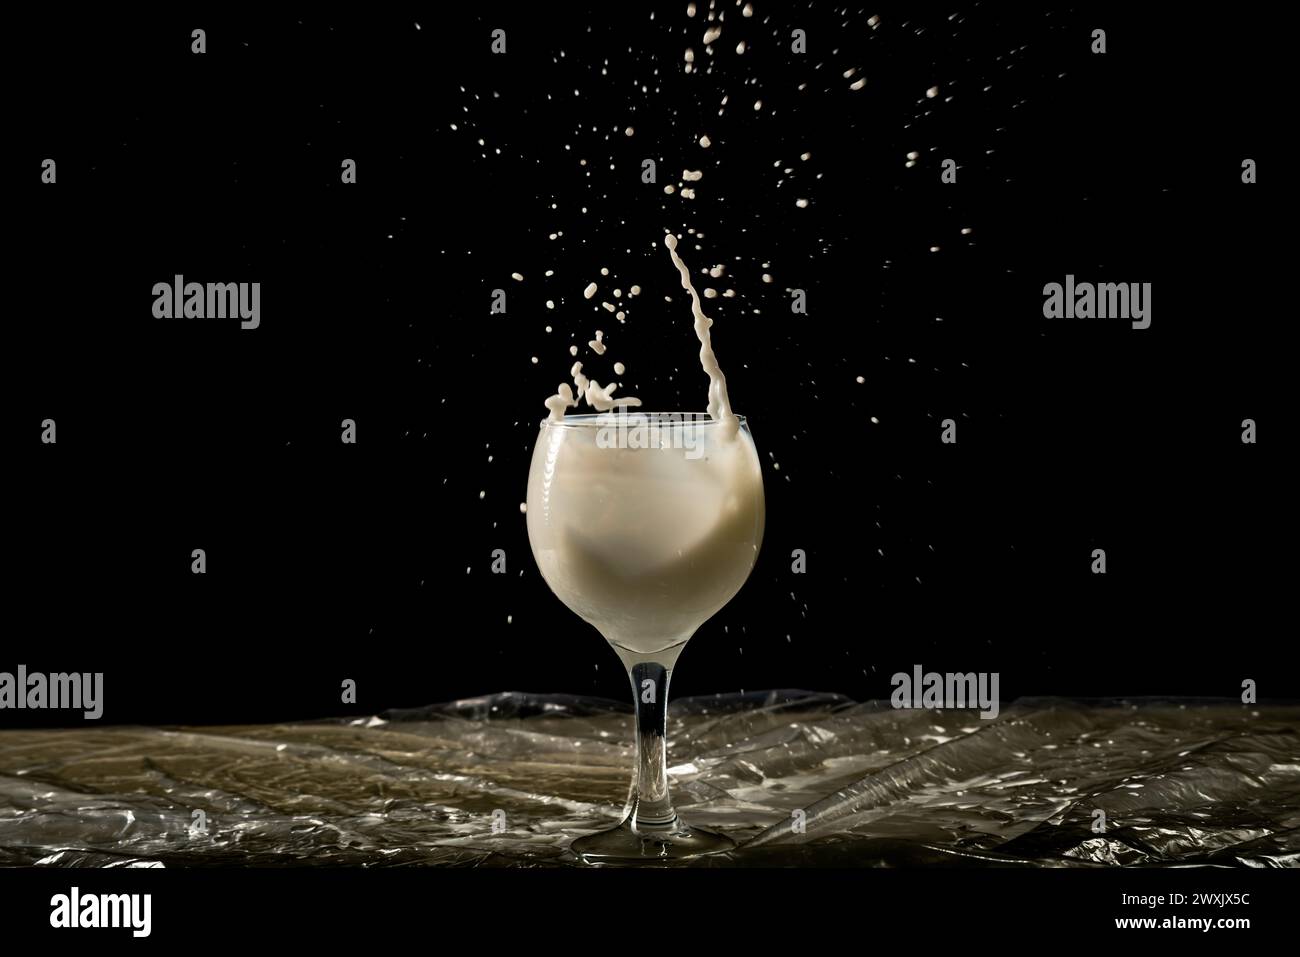 Spritzen Sie in einen Glasbecher mit Milch hinein. Stürze fliegen in verschiedene Richtungen. Isoliert auf schwarzem Hintergrund. Stockfoto